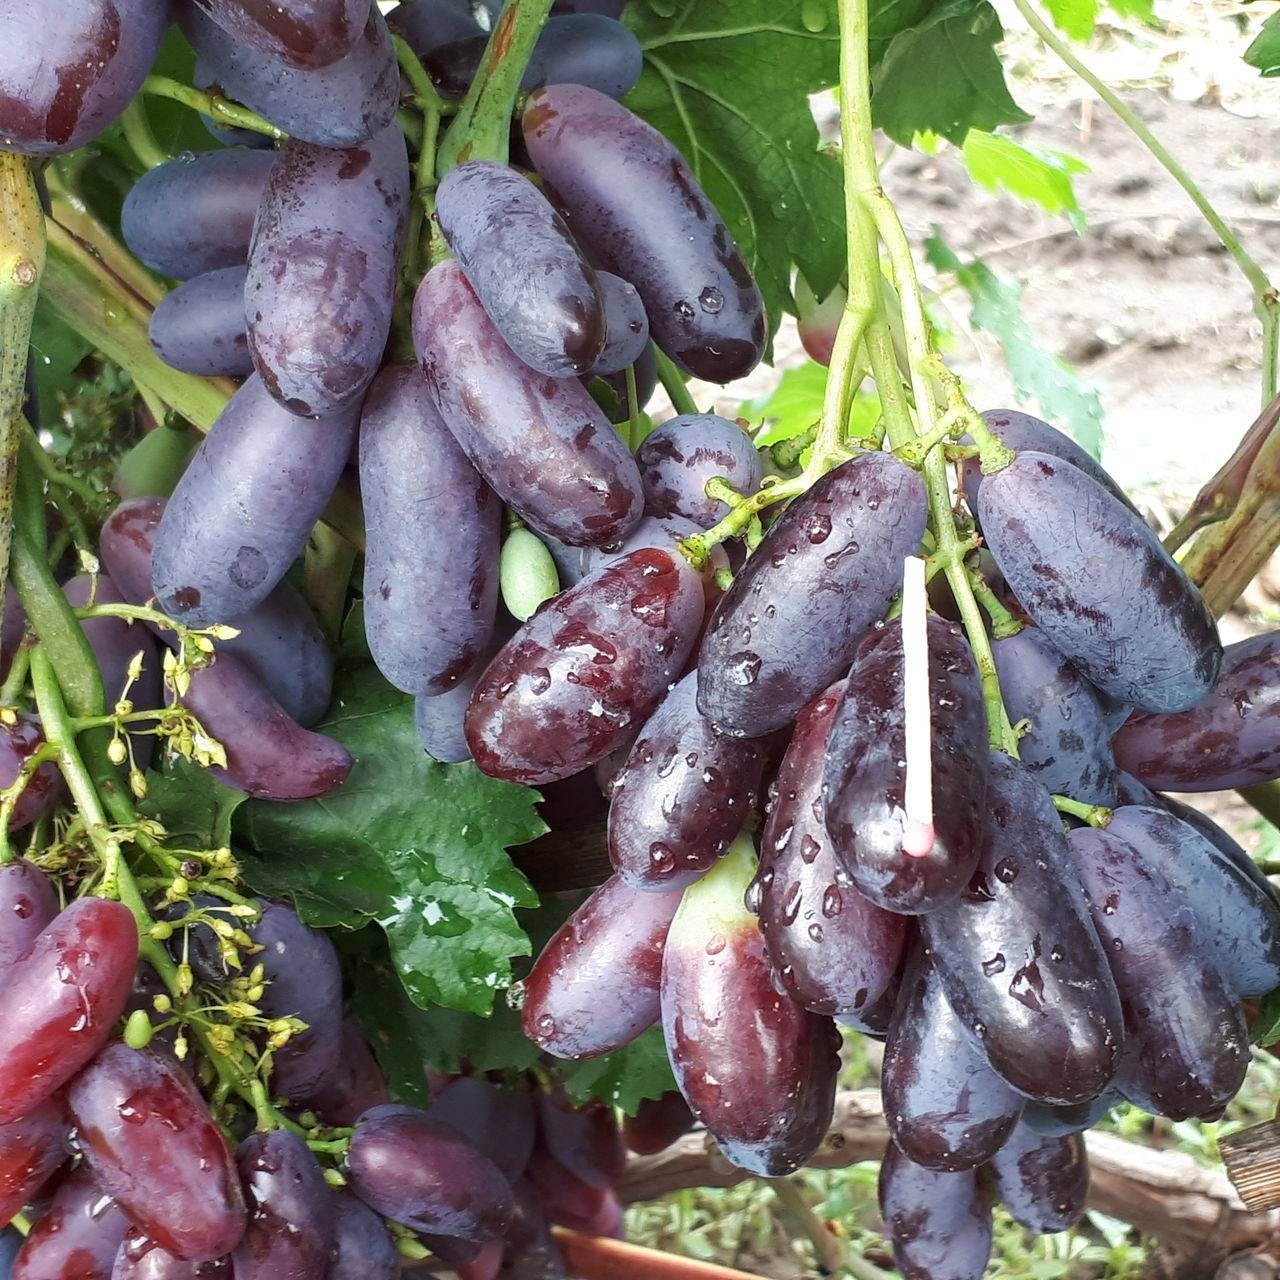 Описание и правила выращивания винограда сорта Ромбик